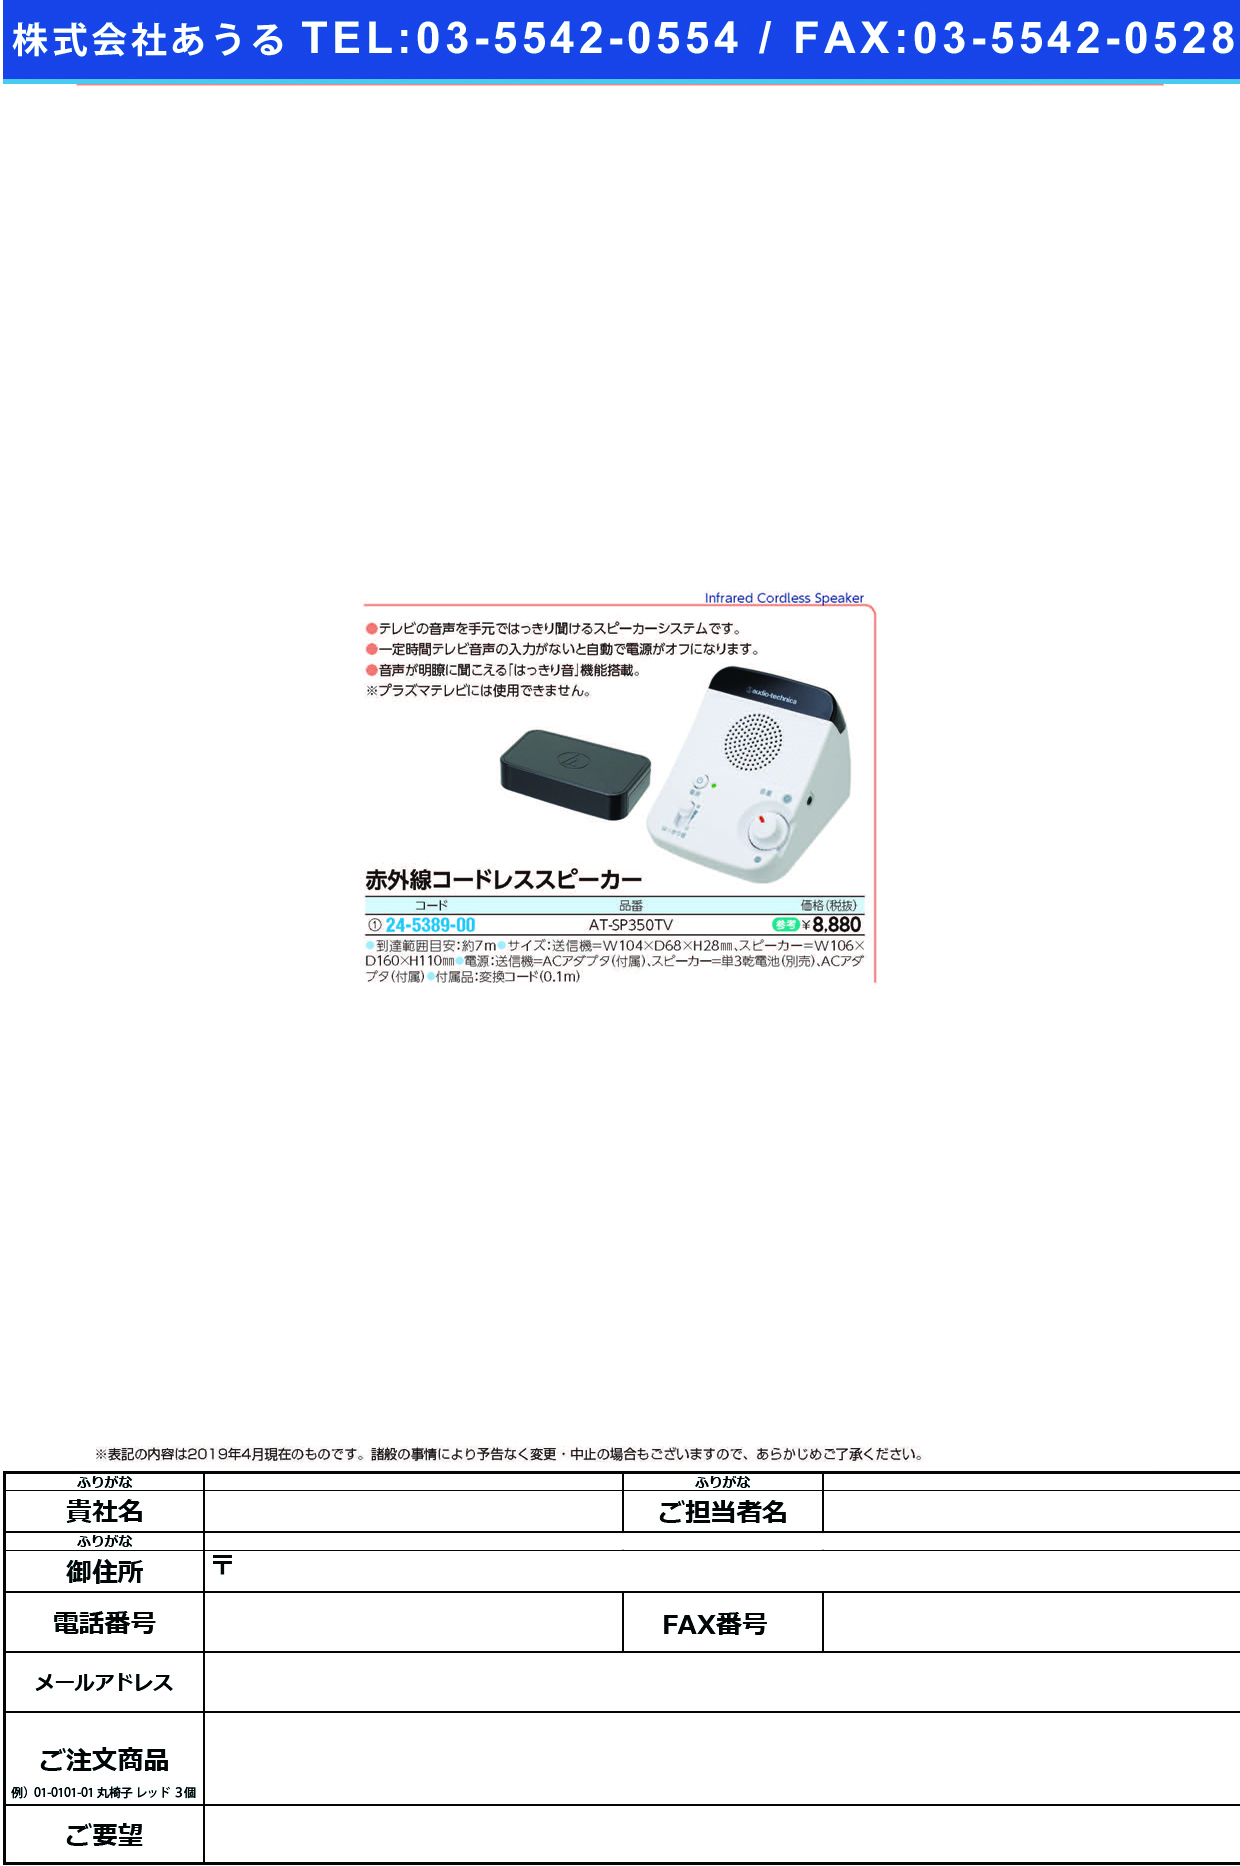 (24-5389-00)赤外線コードレススピーカー AT-SP350TV ｾｷｶﾞｲｾﾝｺｰﾄﾞﾚｽｽﾋﾟｰｶｰ【1台単位】【2019年カタログ商品】